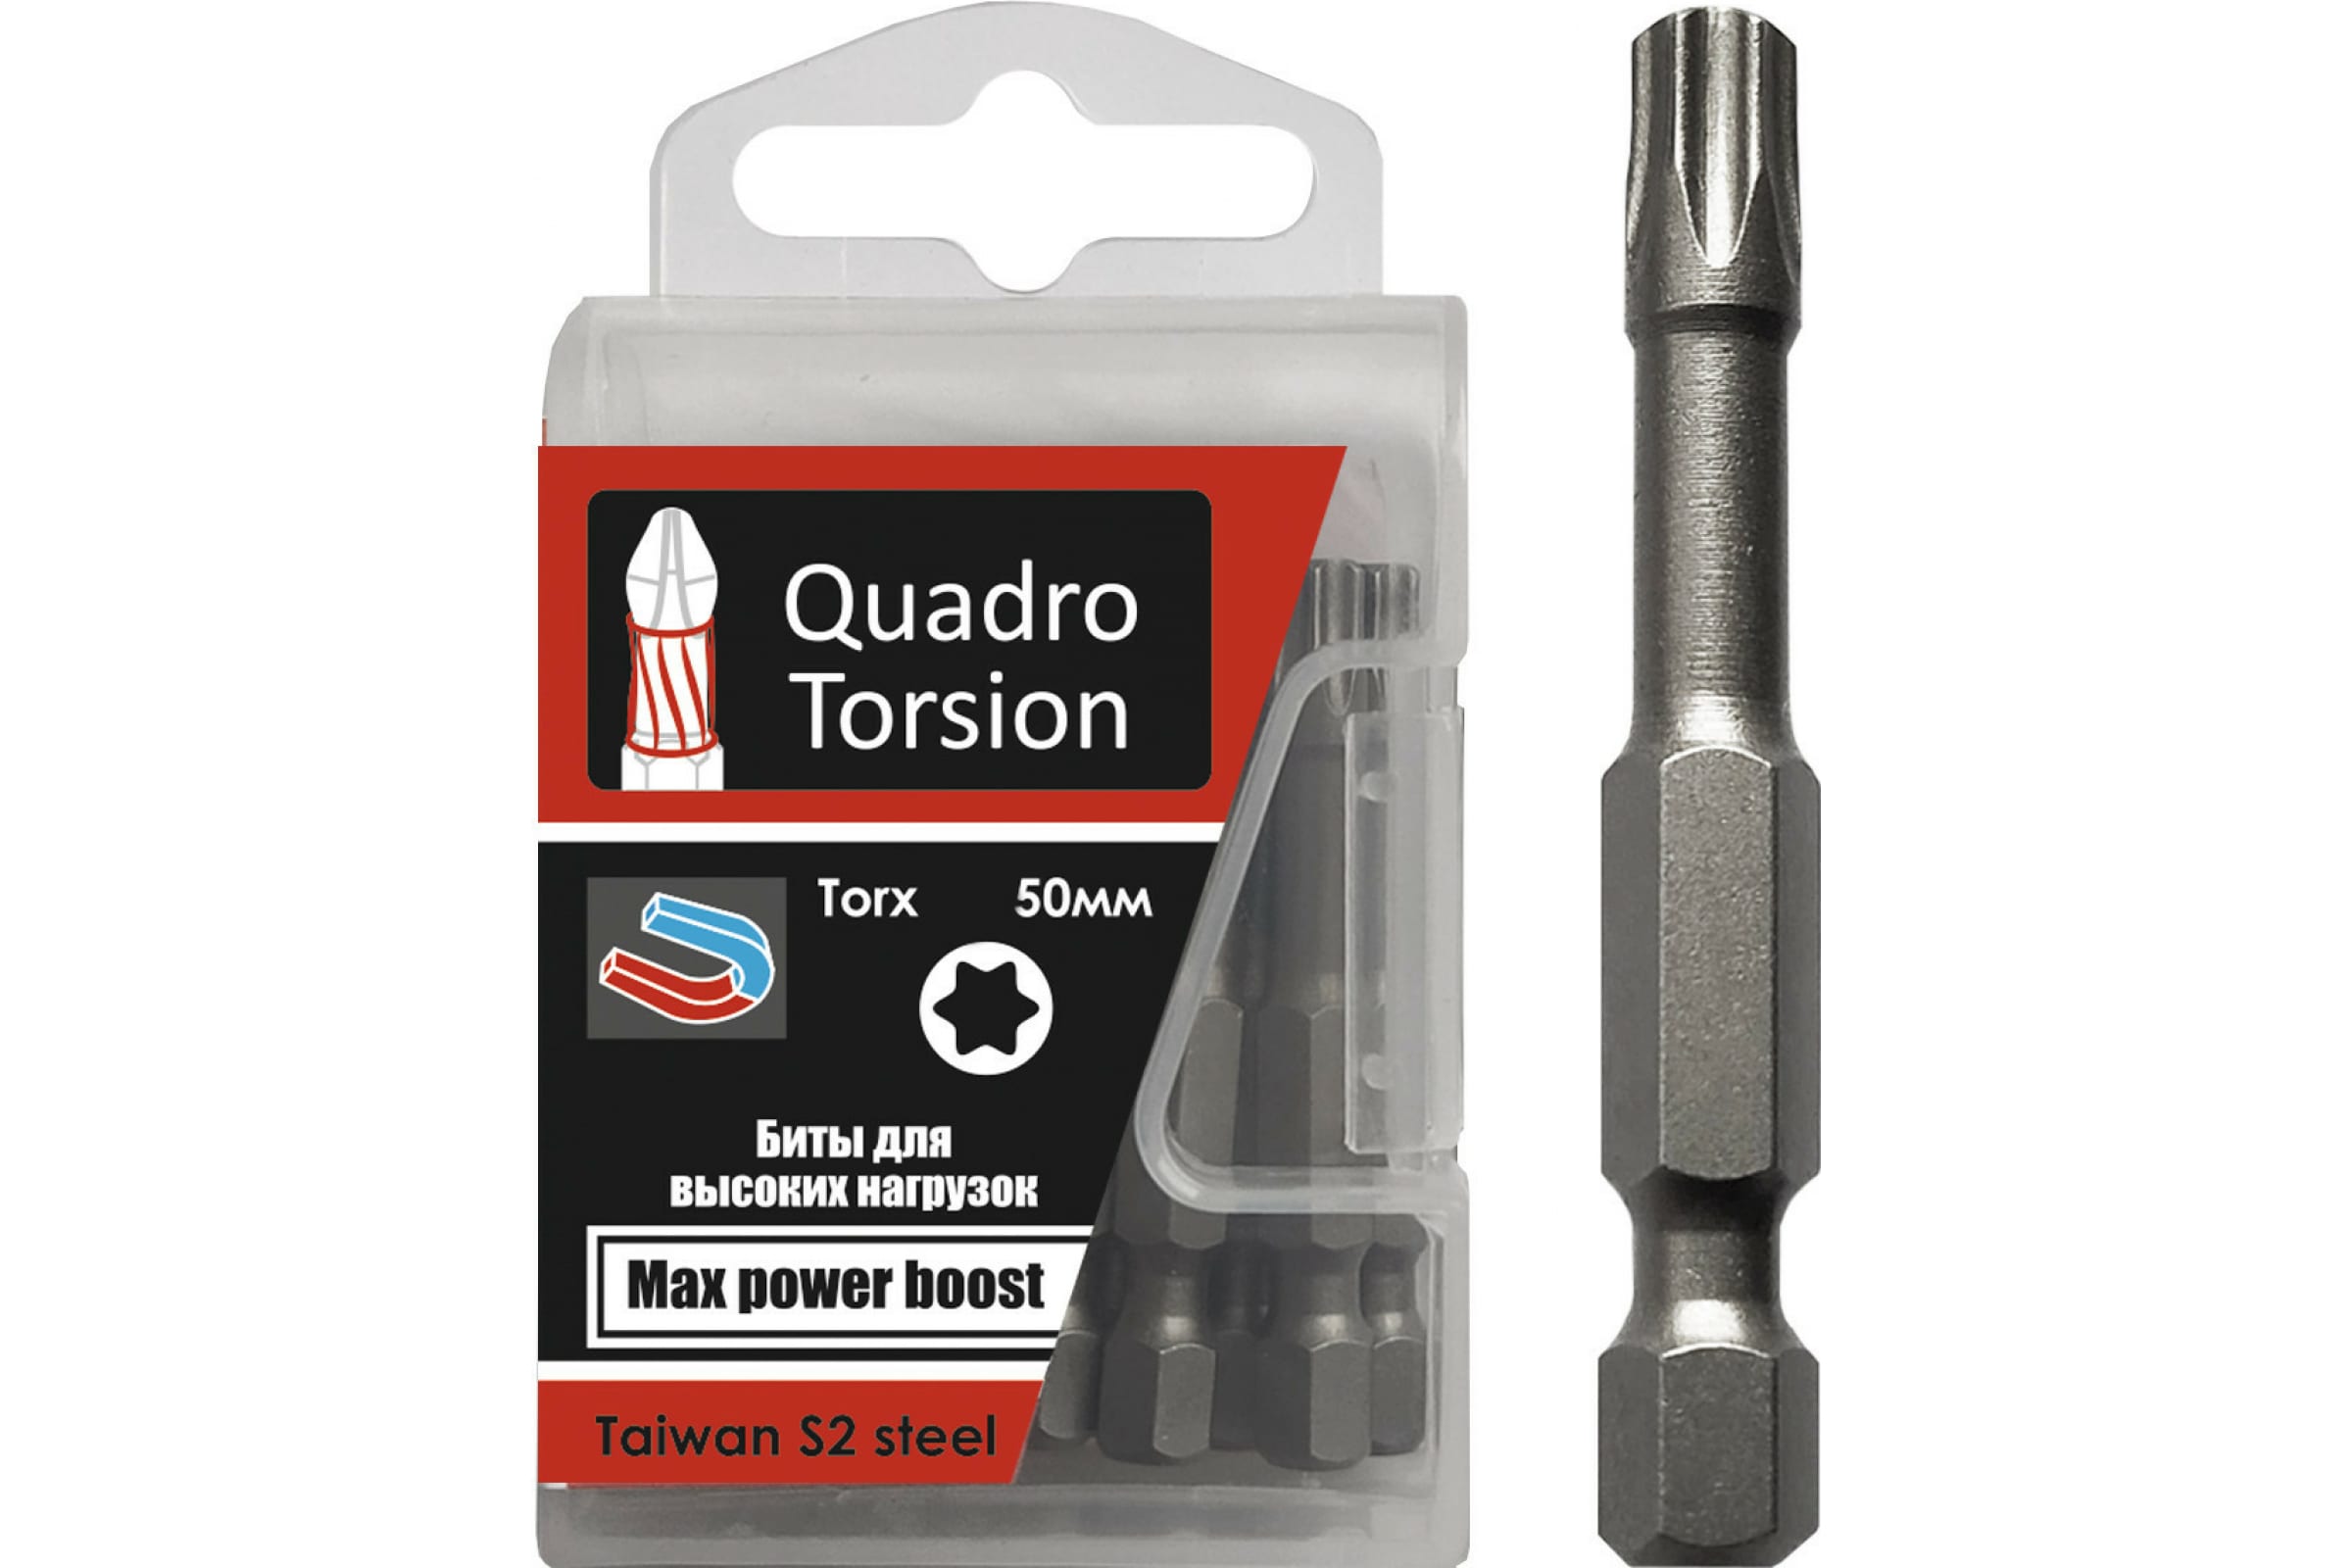 Quadro Torsion бита 1/4 20-50мм Torx 10 шт./кор. 432050 бита torx 10 шт t20 50 мм 1 4 quadro torsion 432050